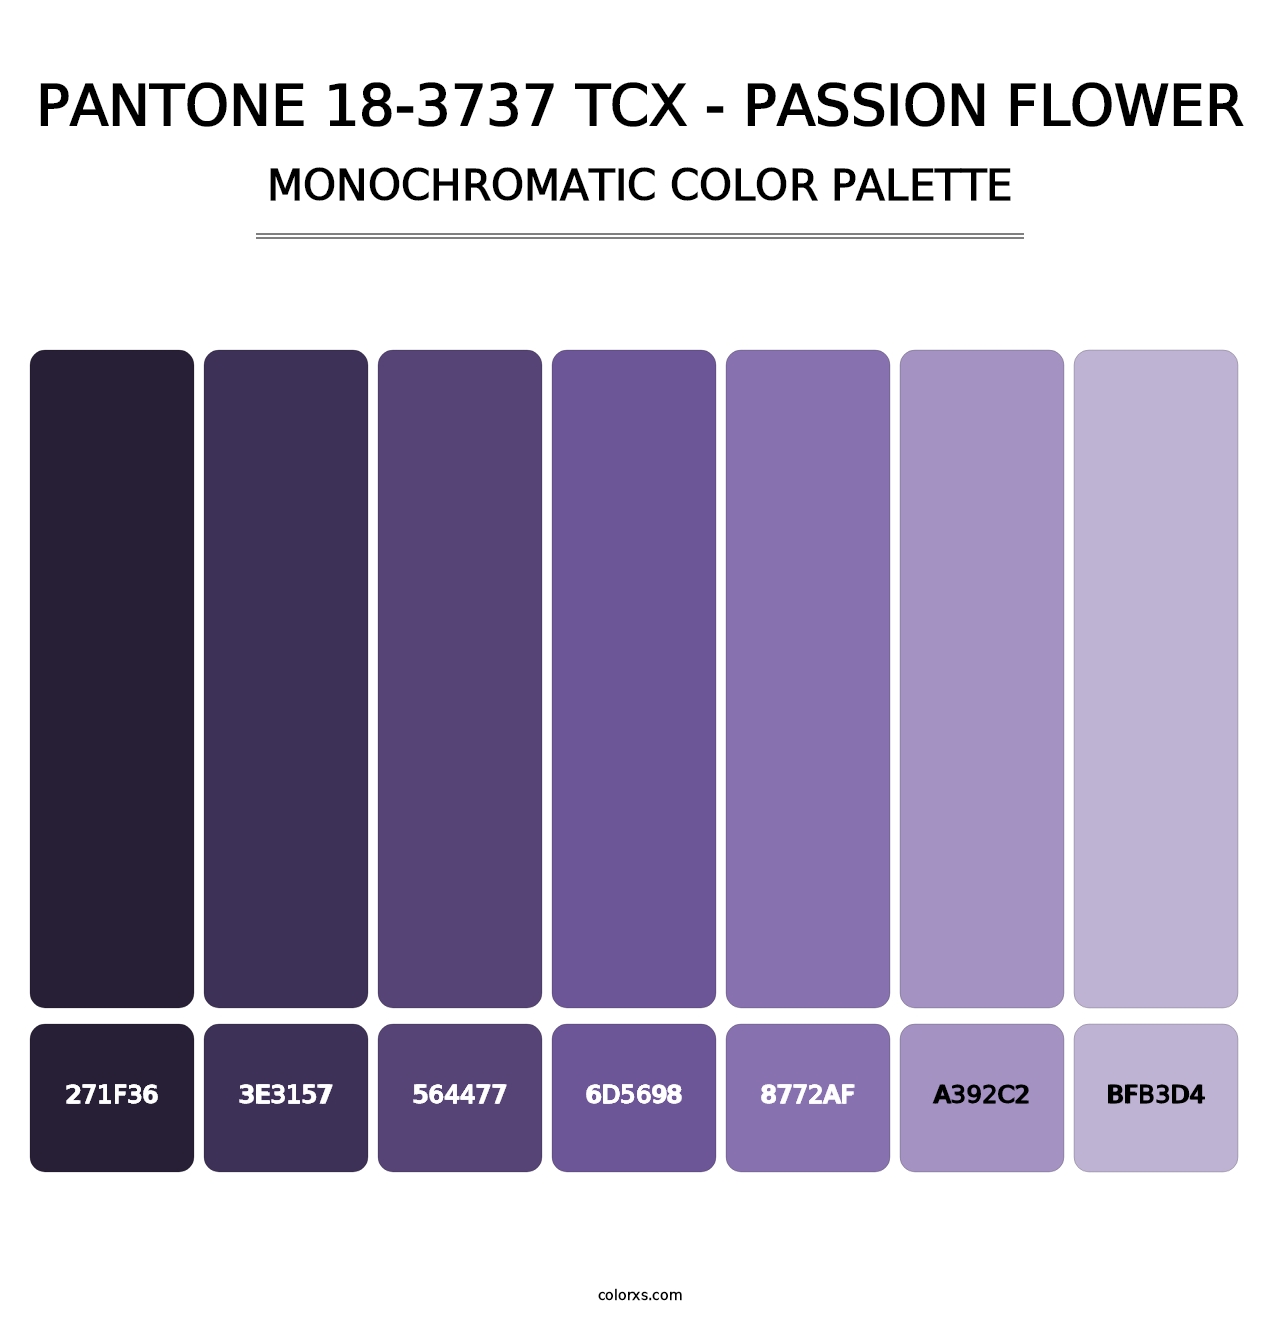 PANTONE 18-3737 TCX - Passion Flower - Monochromatic Color Palette